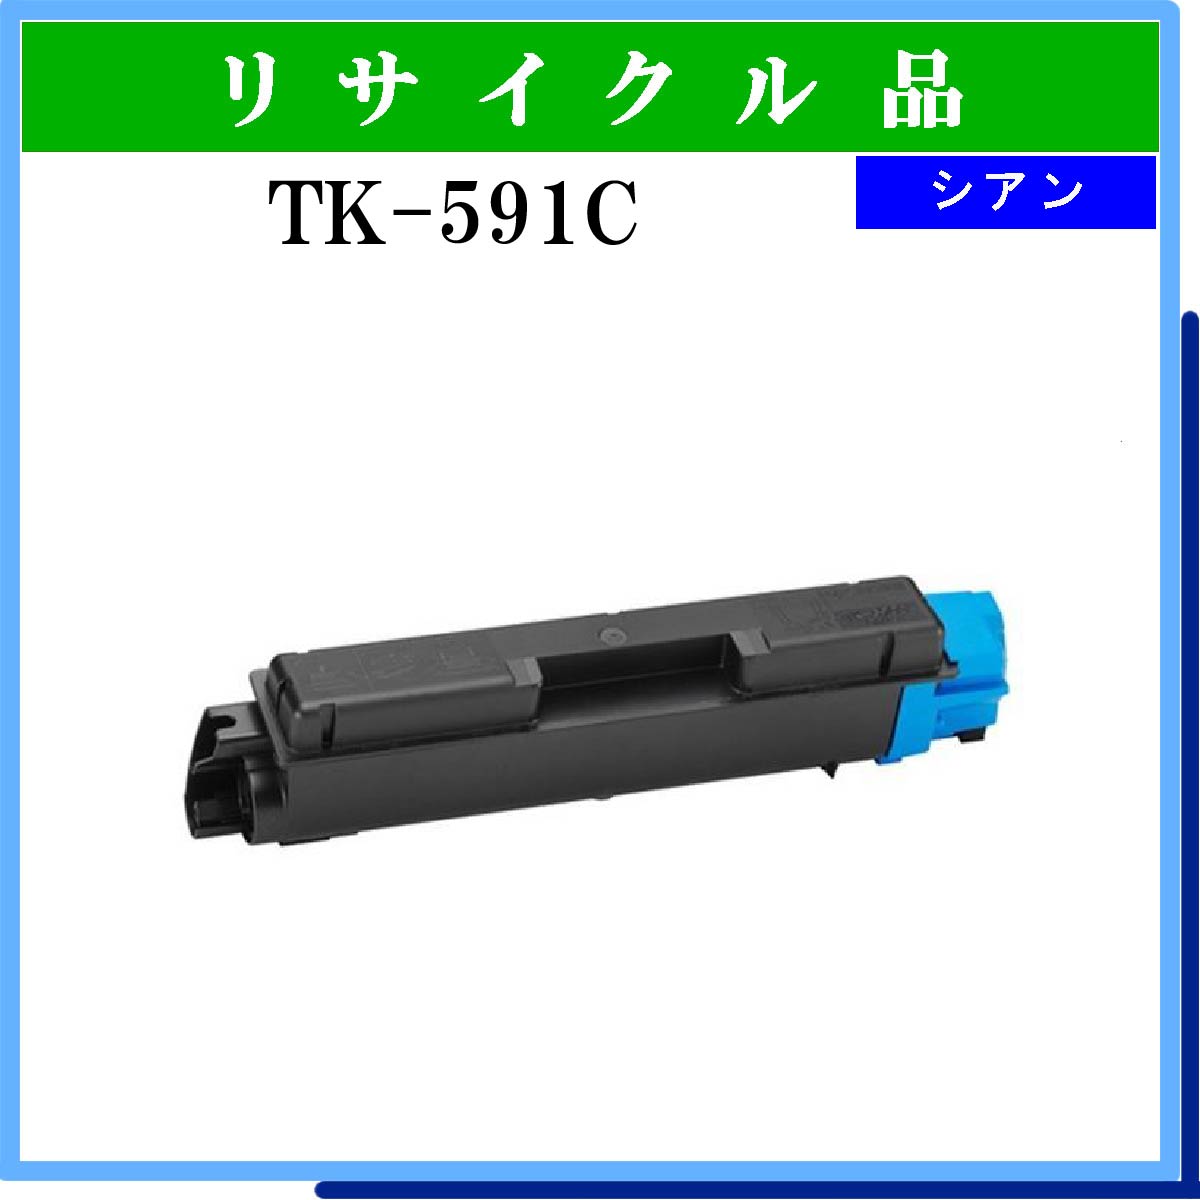 TK-591C